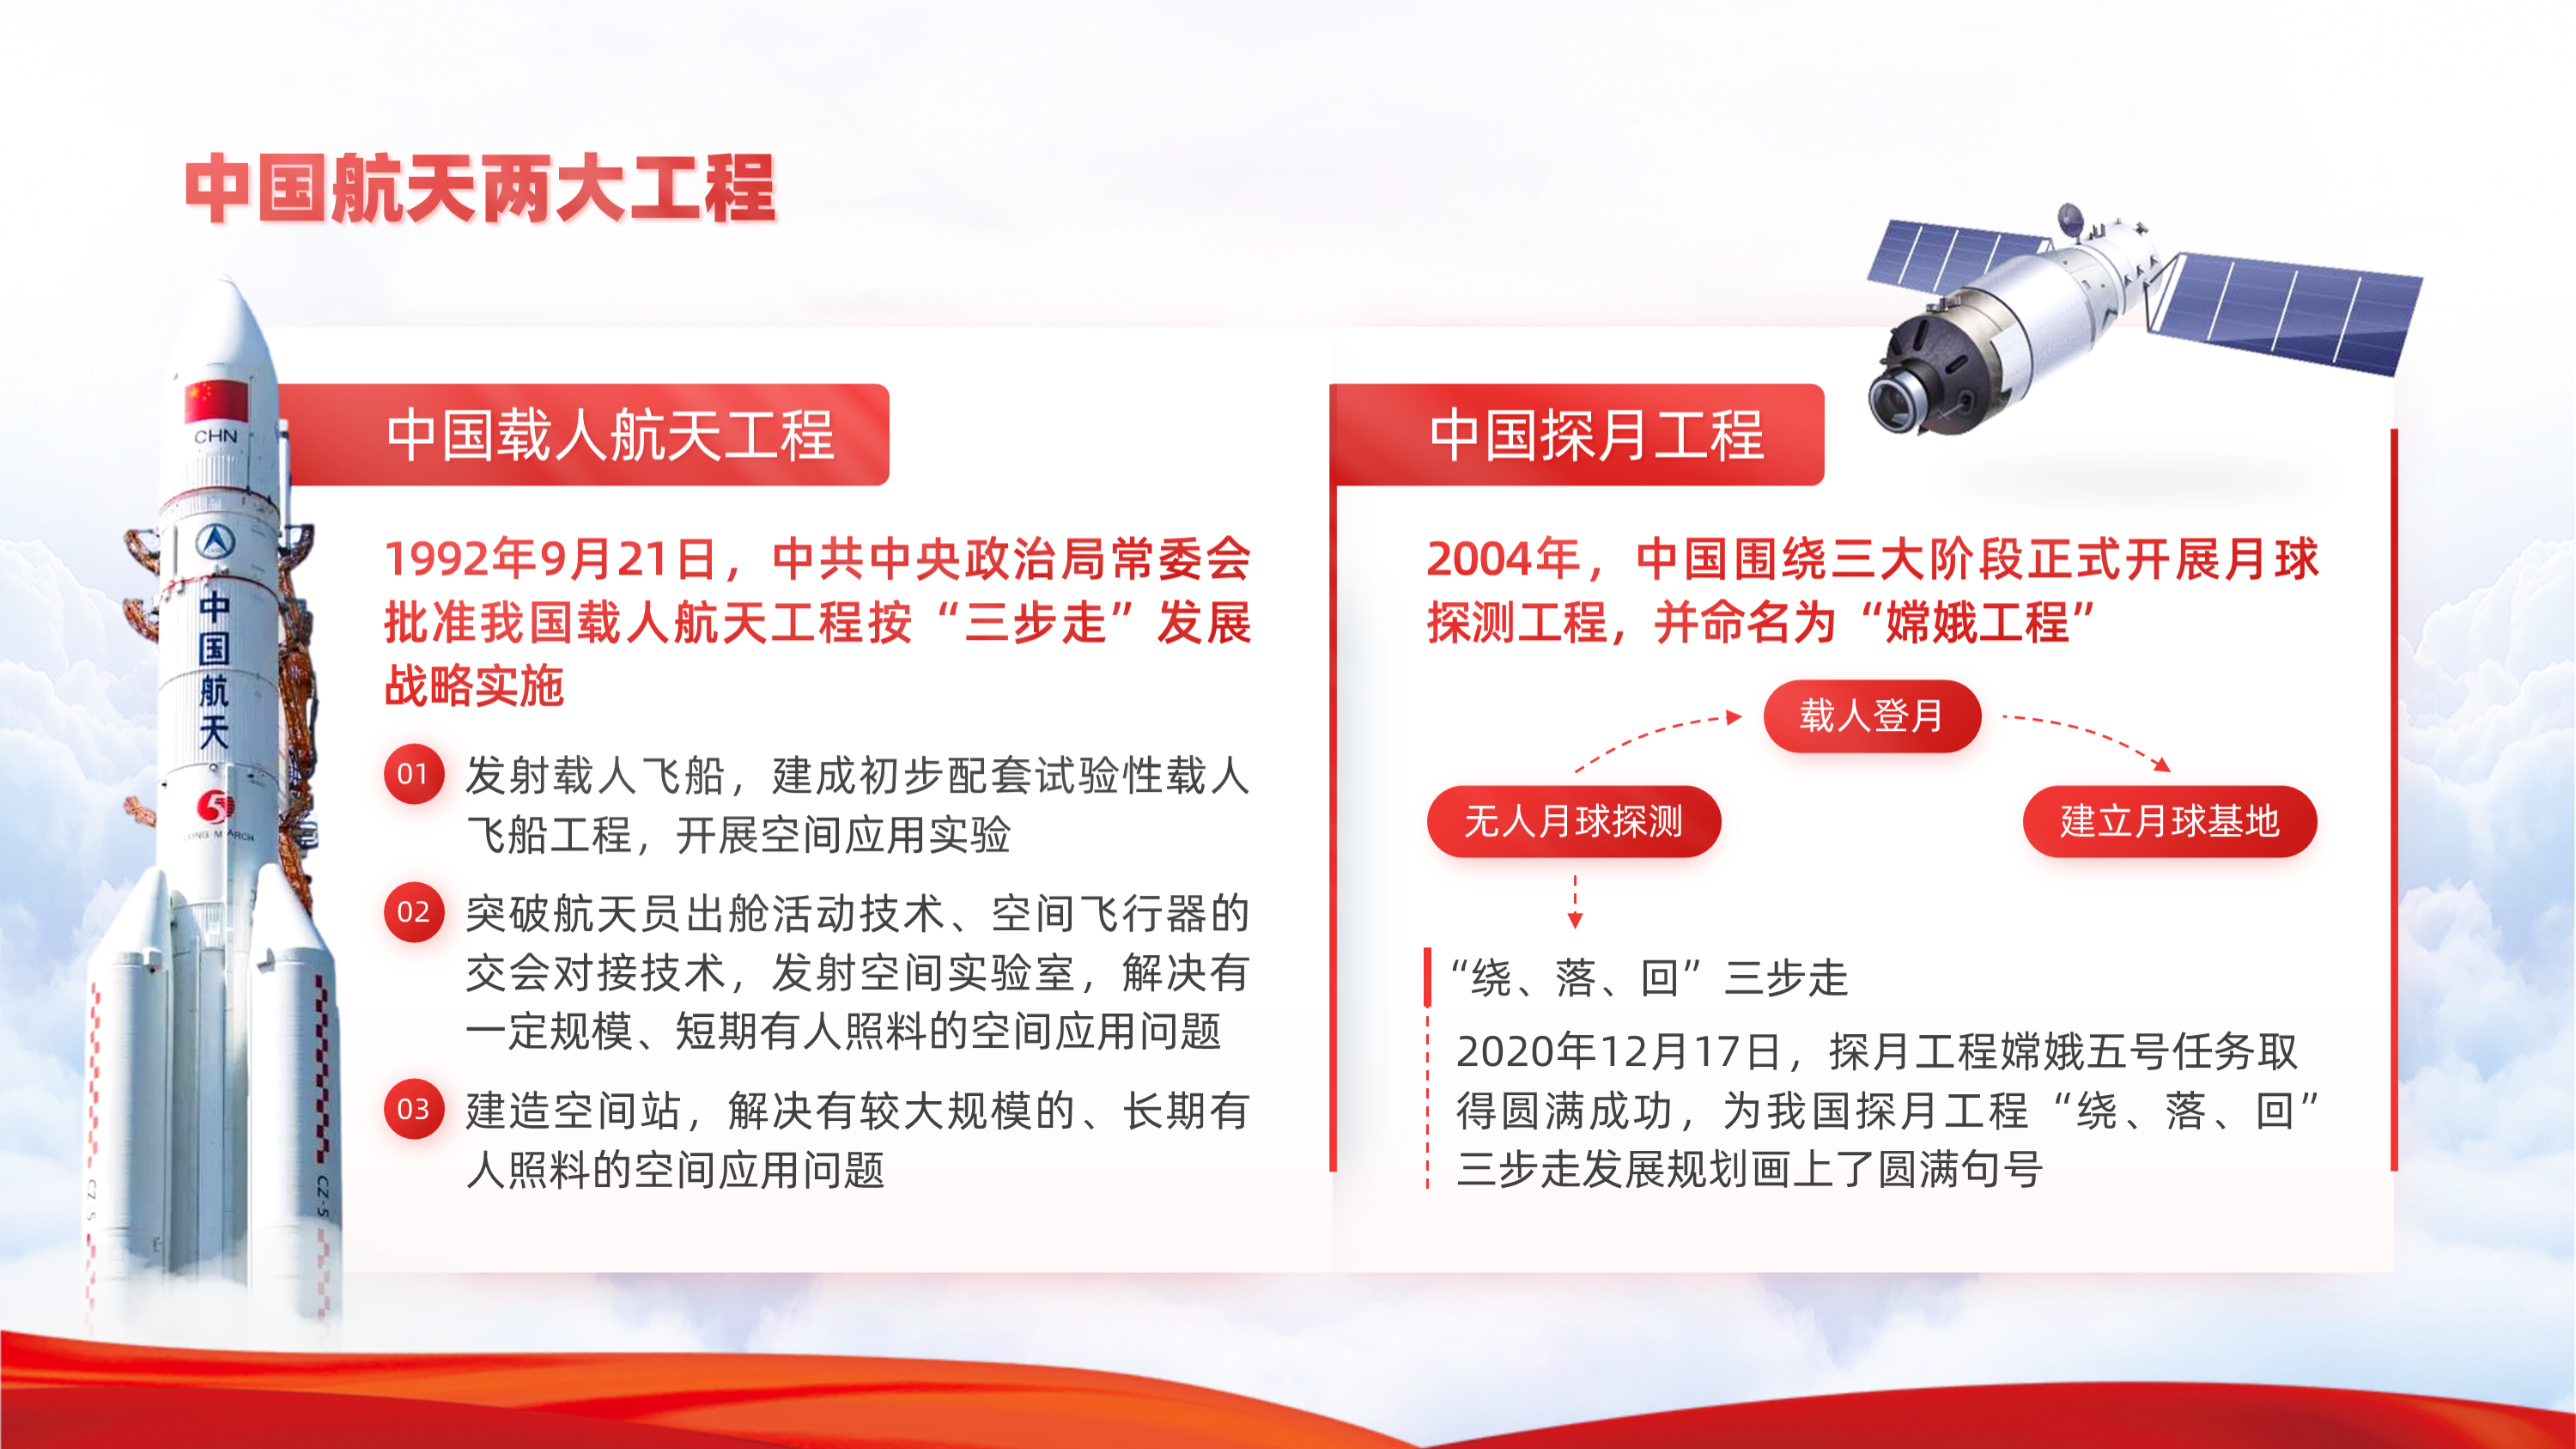 第一部分内容讲的是中国载人航天工程三步走发展战略,所以我们可以